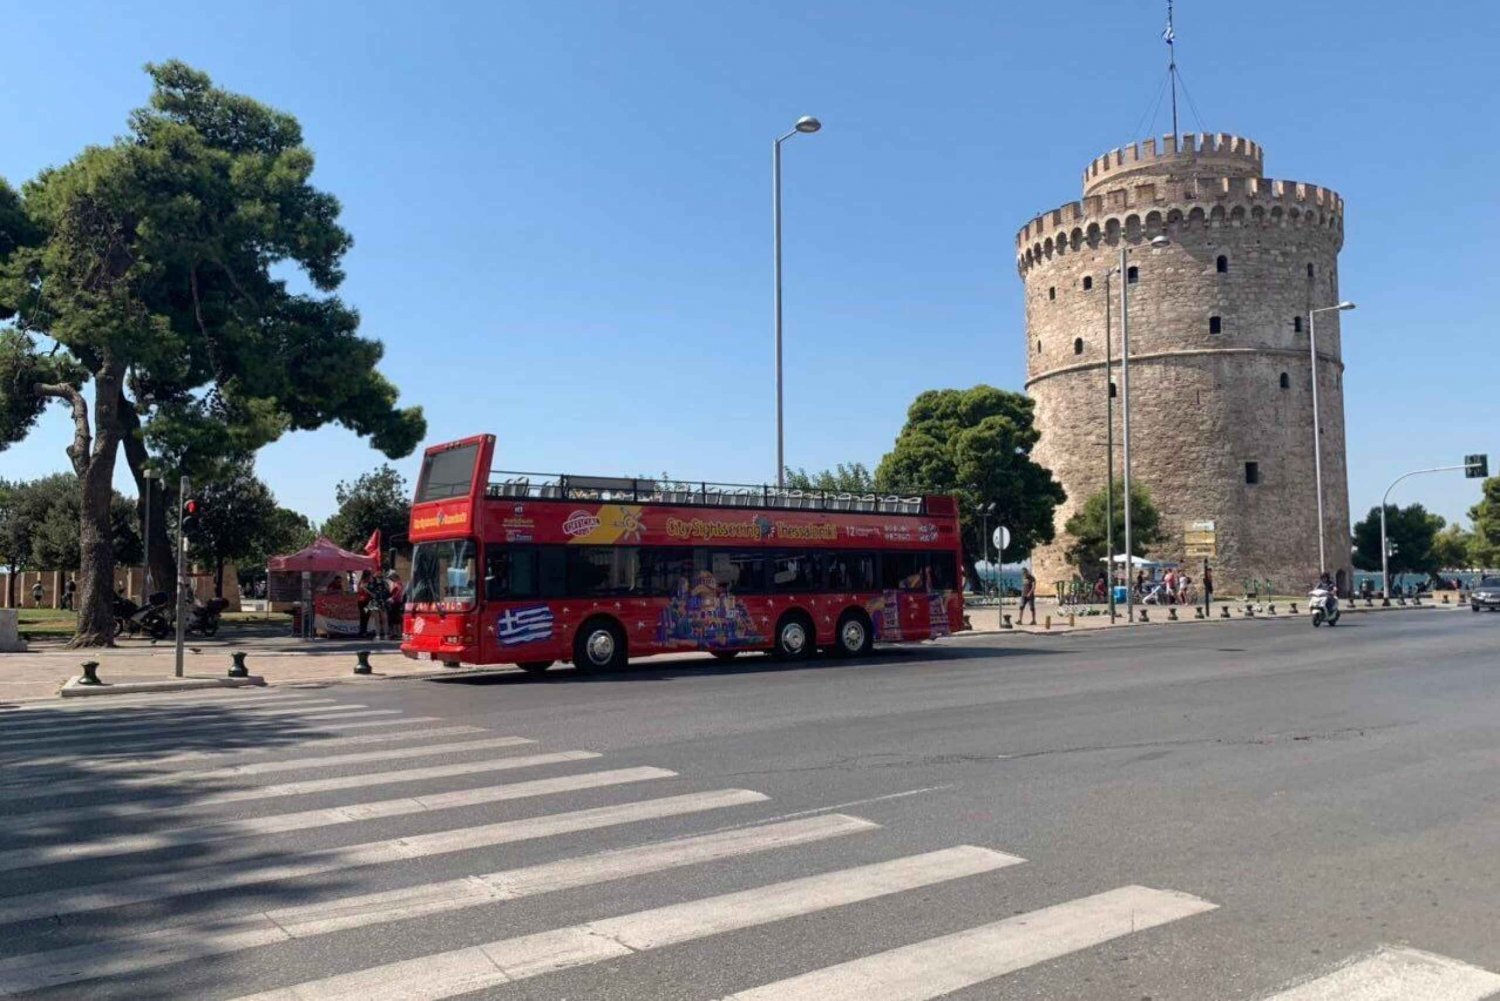 Thessalonique : Visite guidée de la ville en bus avec montée et descente rapides